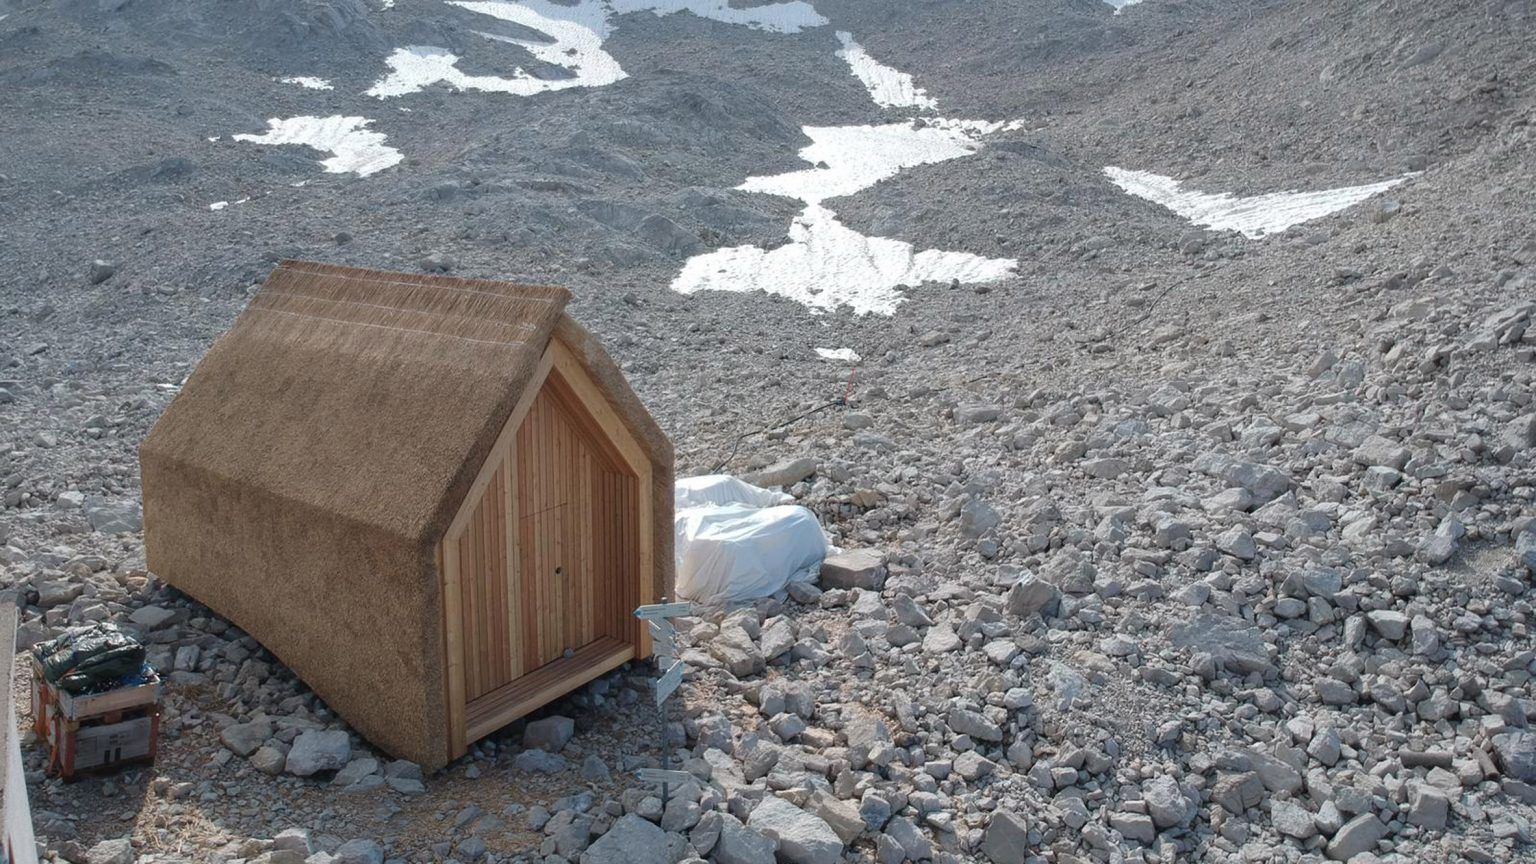 Солом'яне покриття: в Німеччині розробили міні-будинок для високогірних умов – фото 